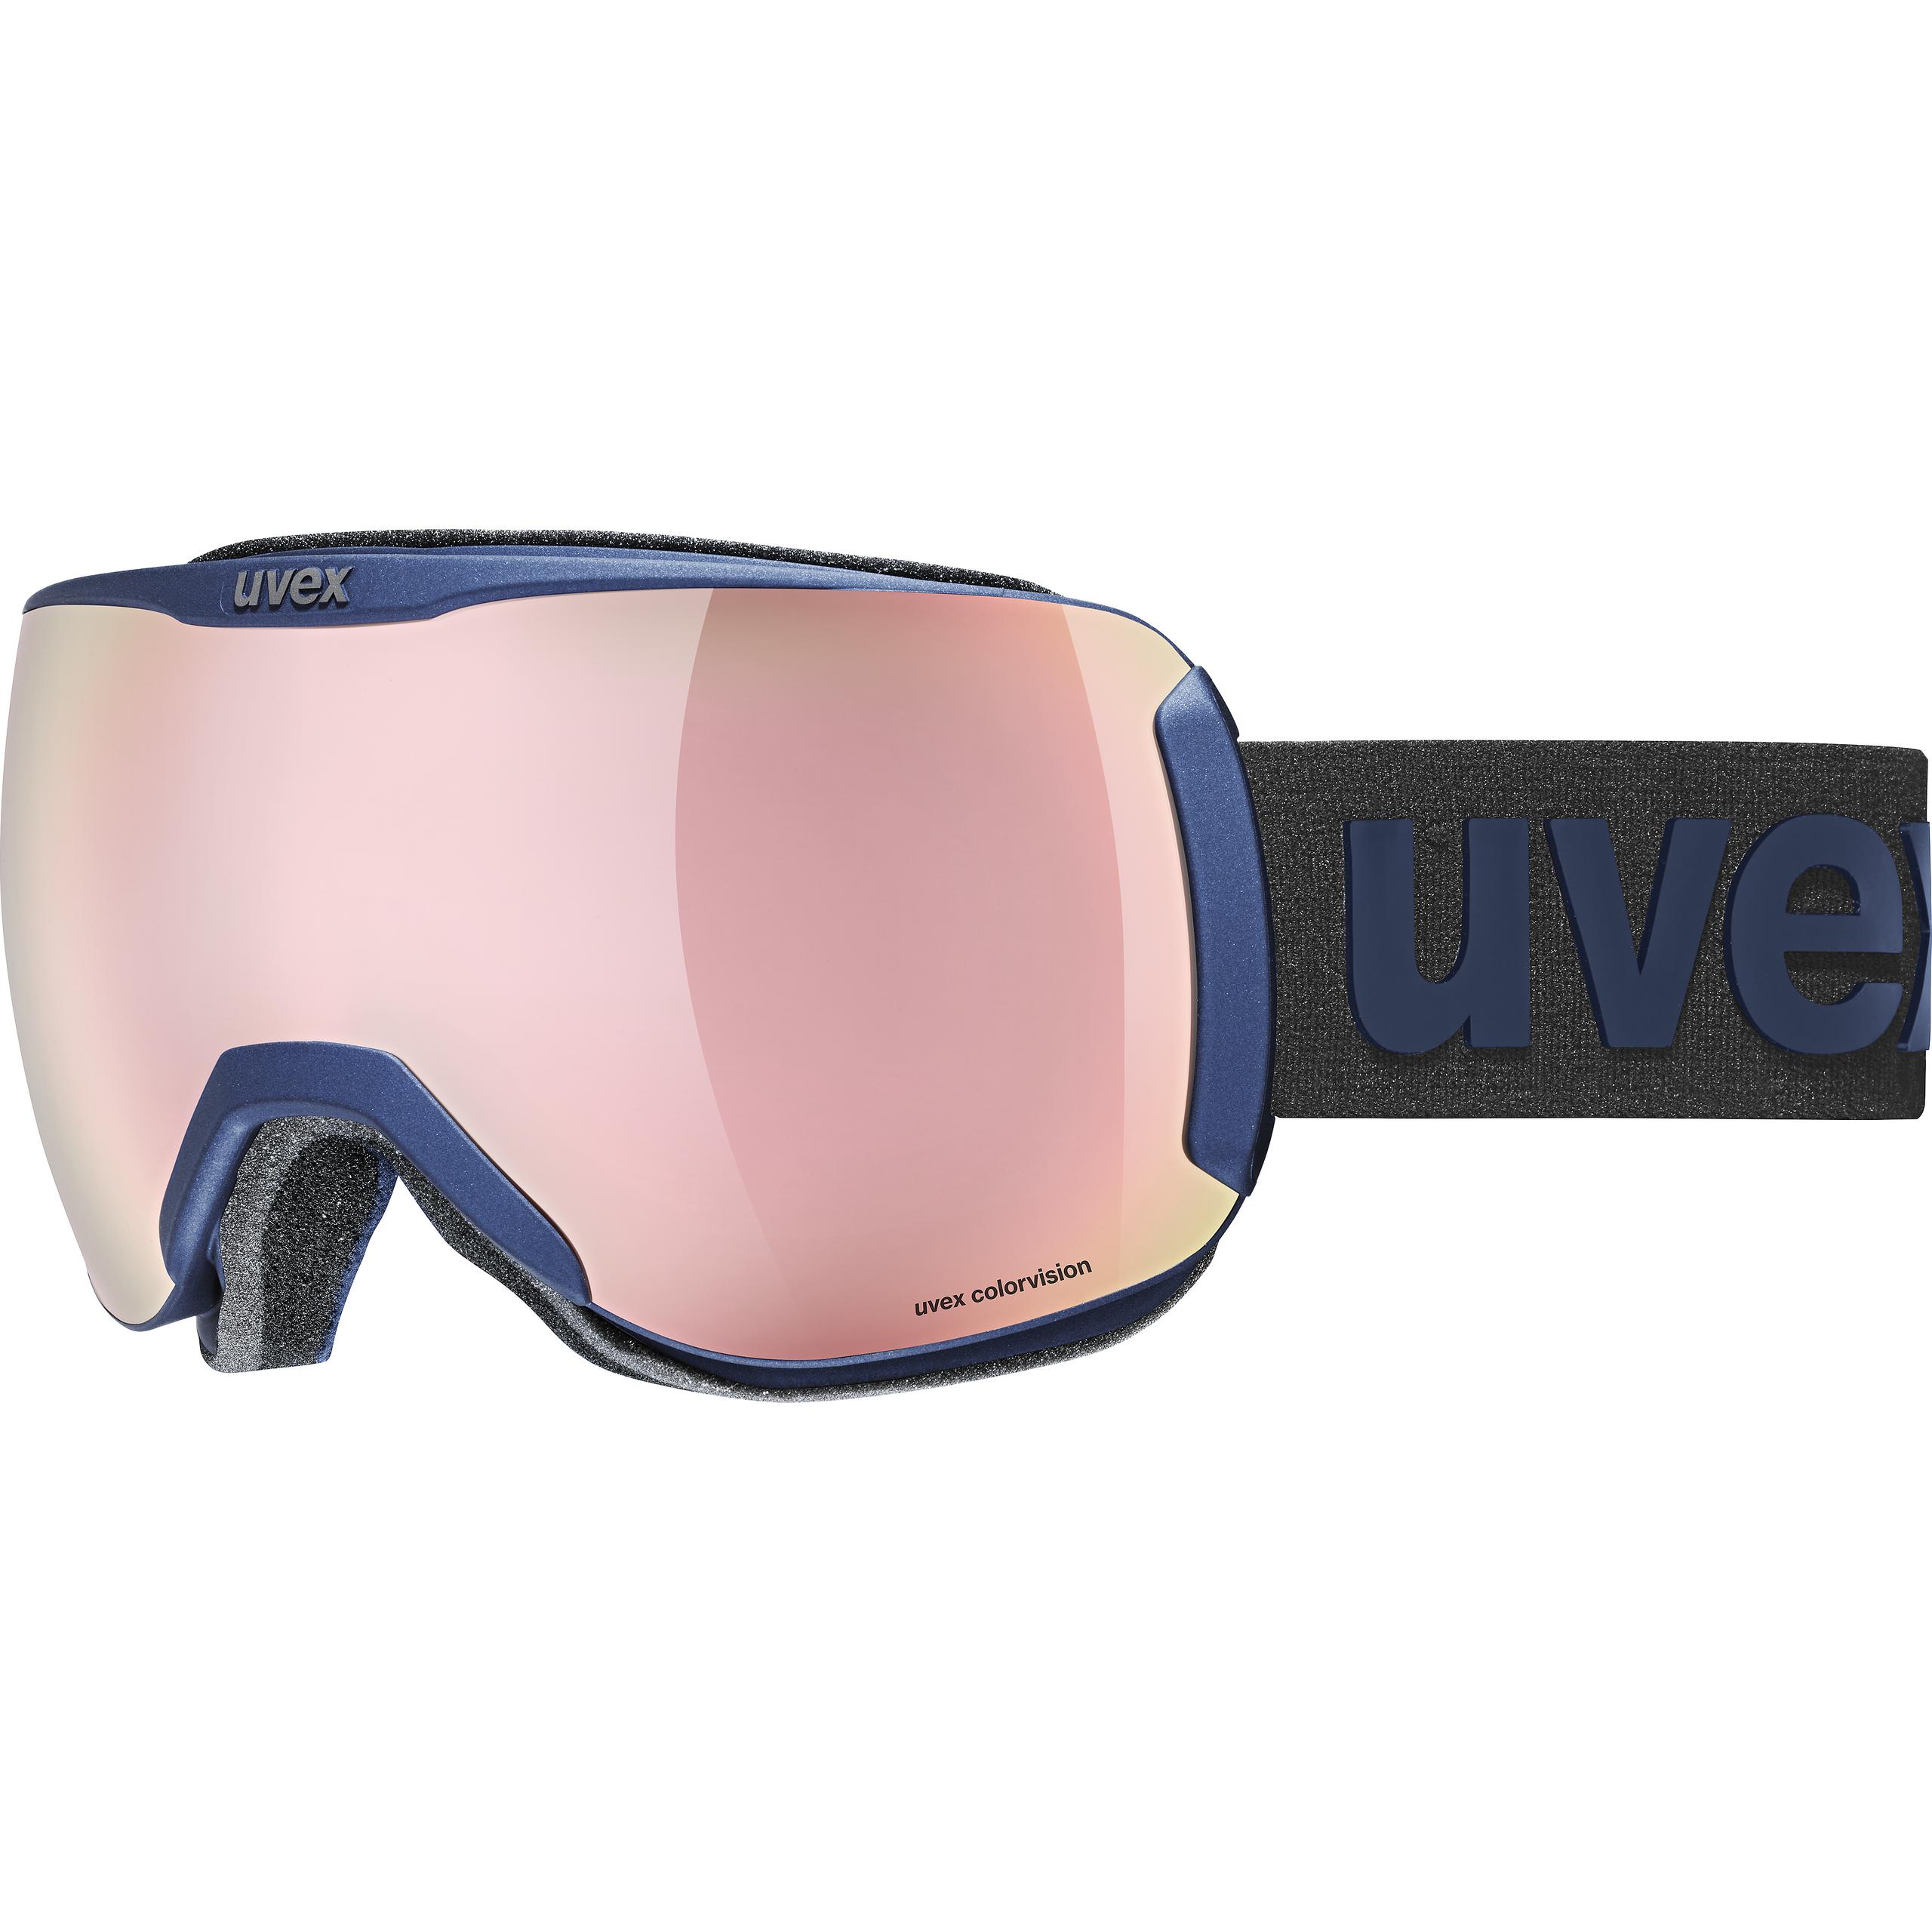 19 Schwarz Lila halbrand sunglasses Neu UVEX Skibrille Tune Up Verspiegelt 74 